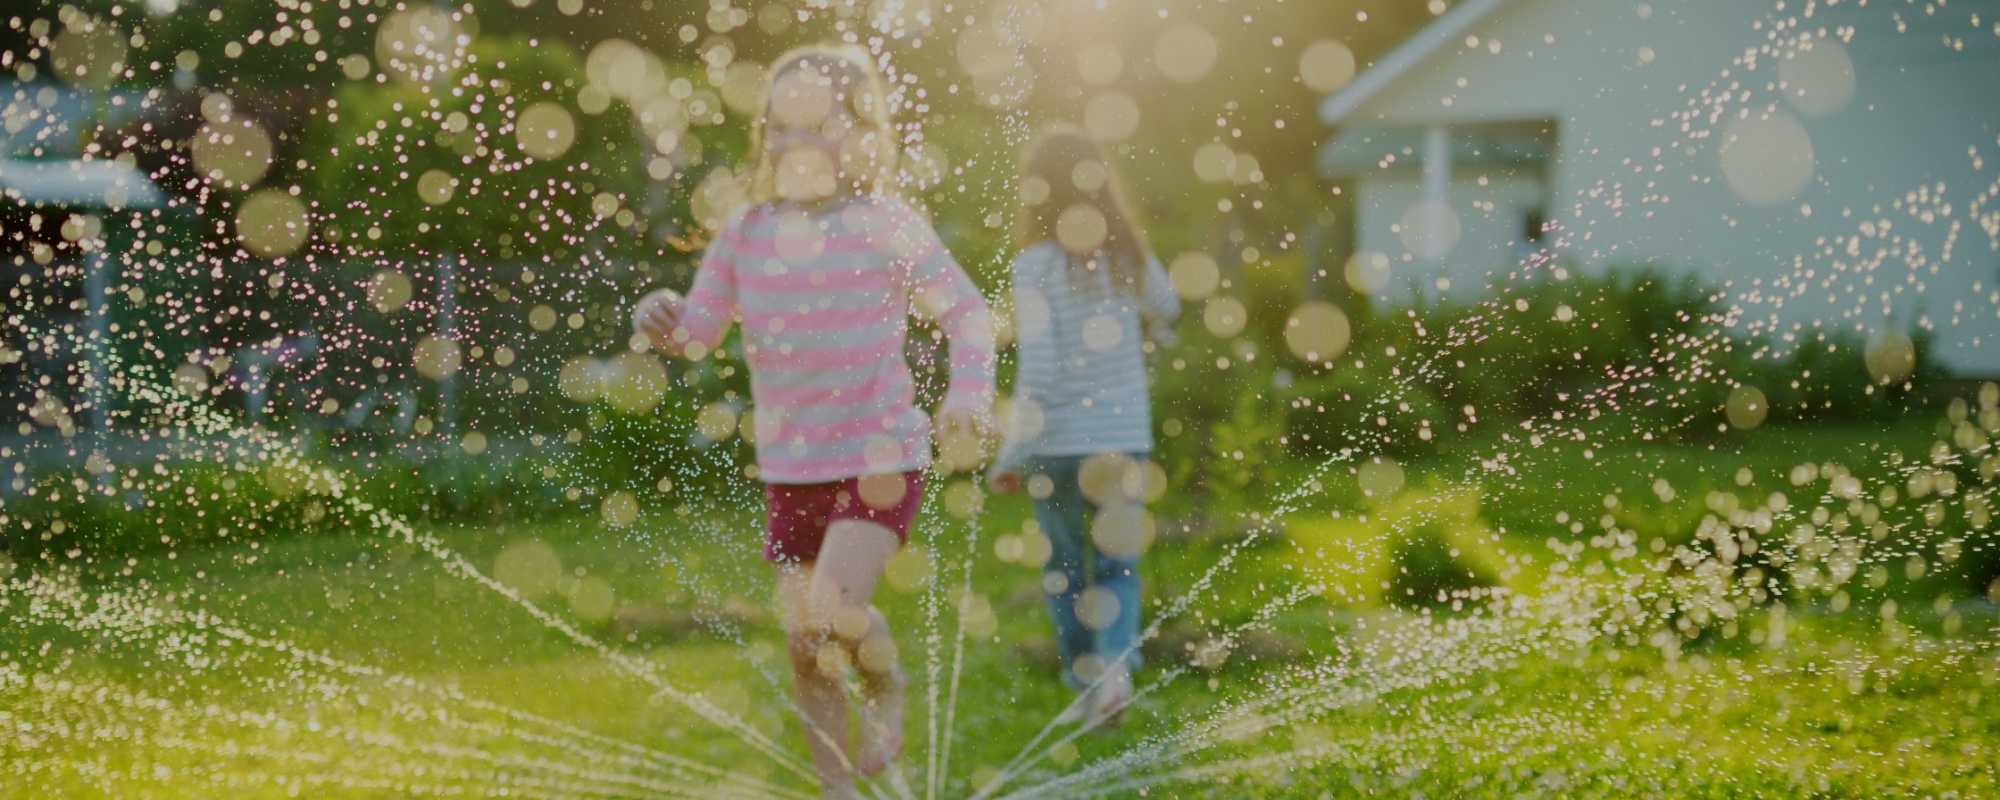 kids in sprinkler